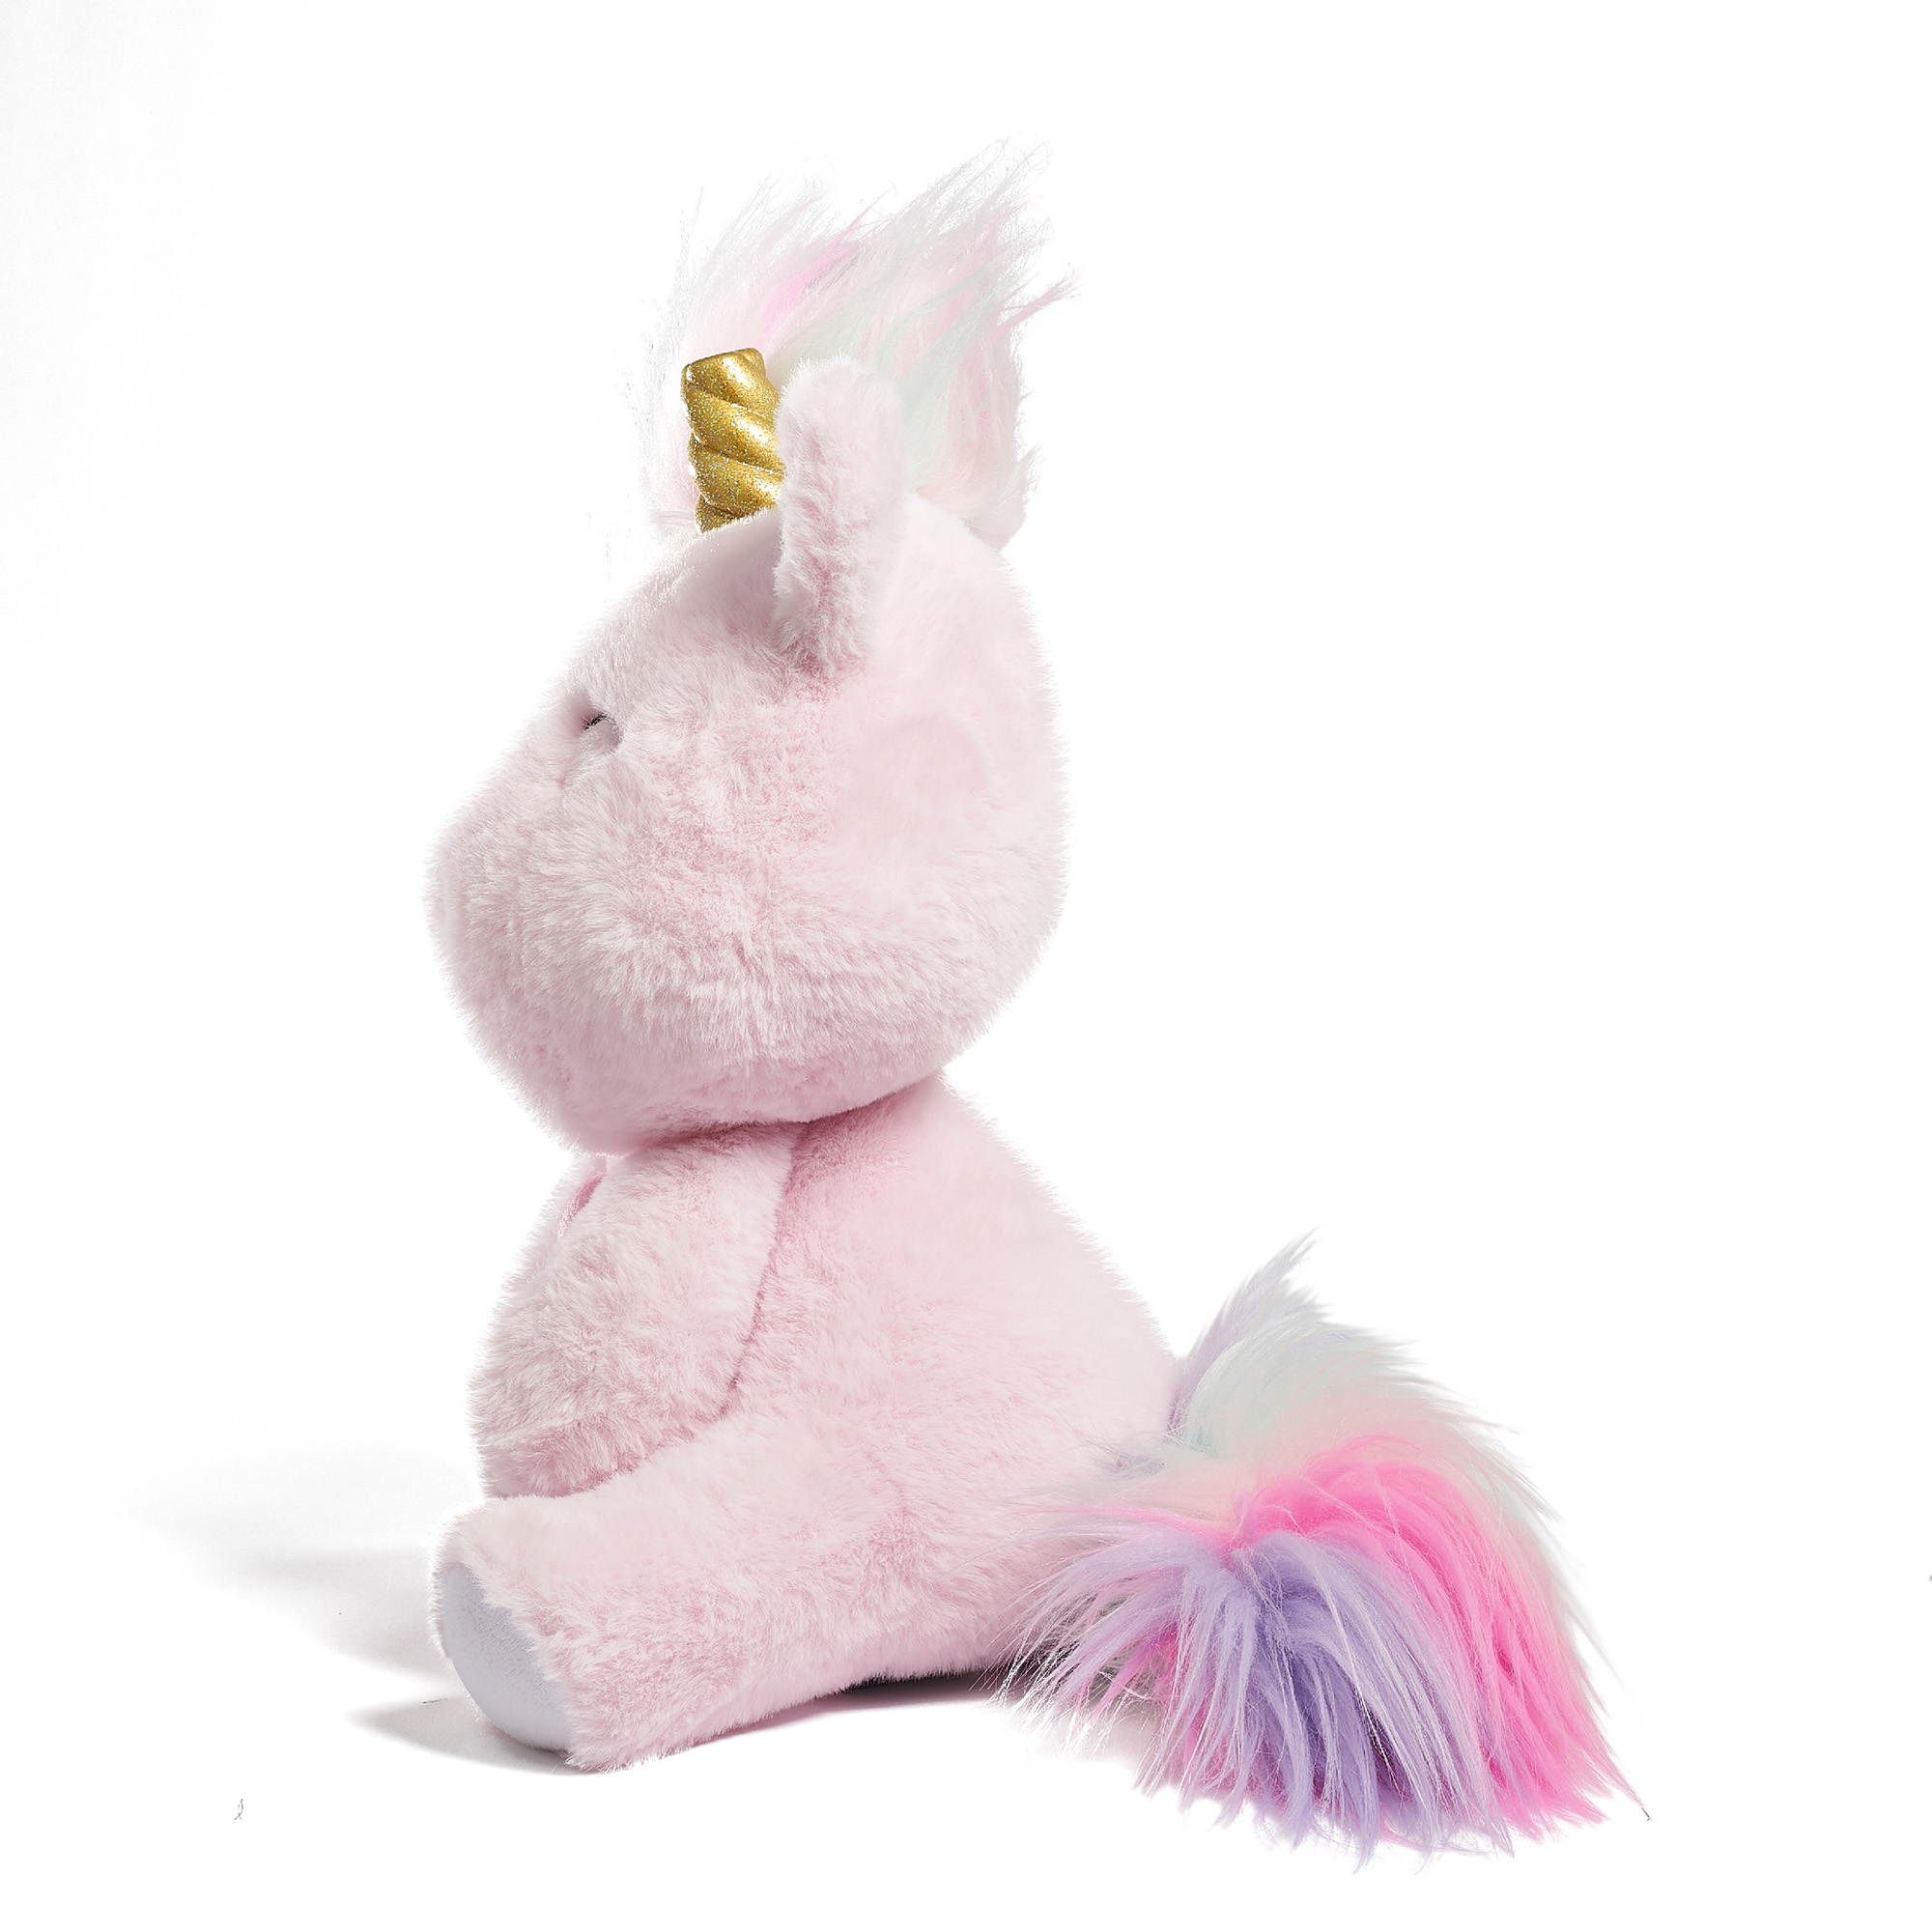 Gatto-unicordo peluche con luci led e suoni - FAO Schwarz